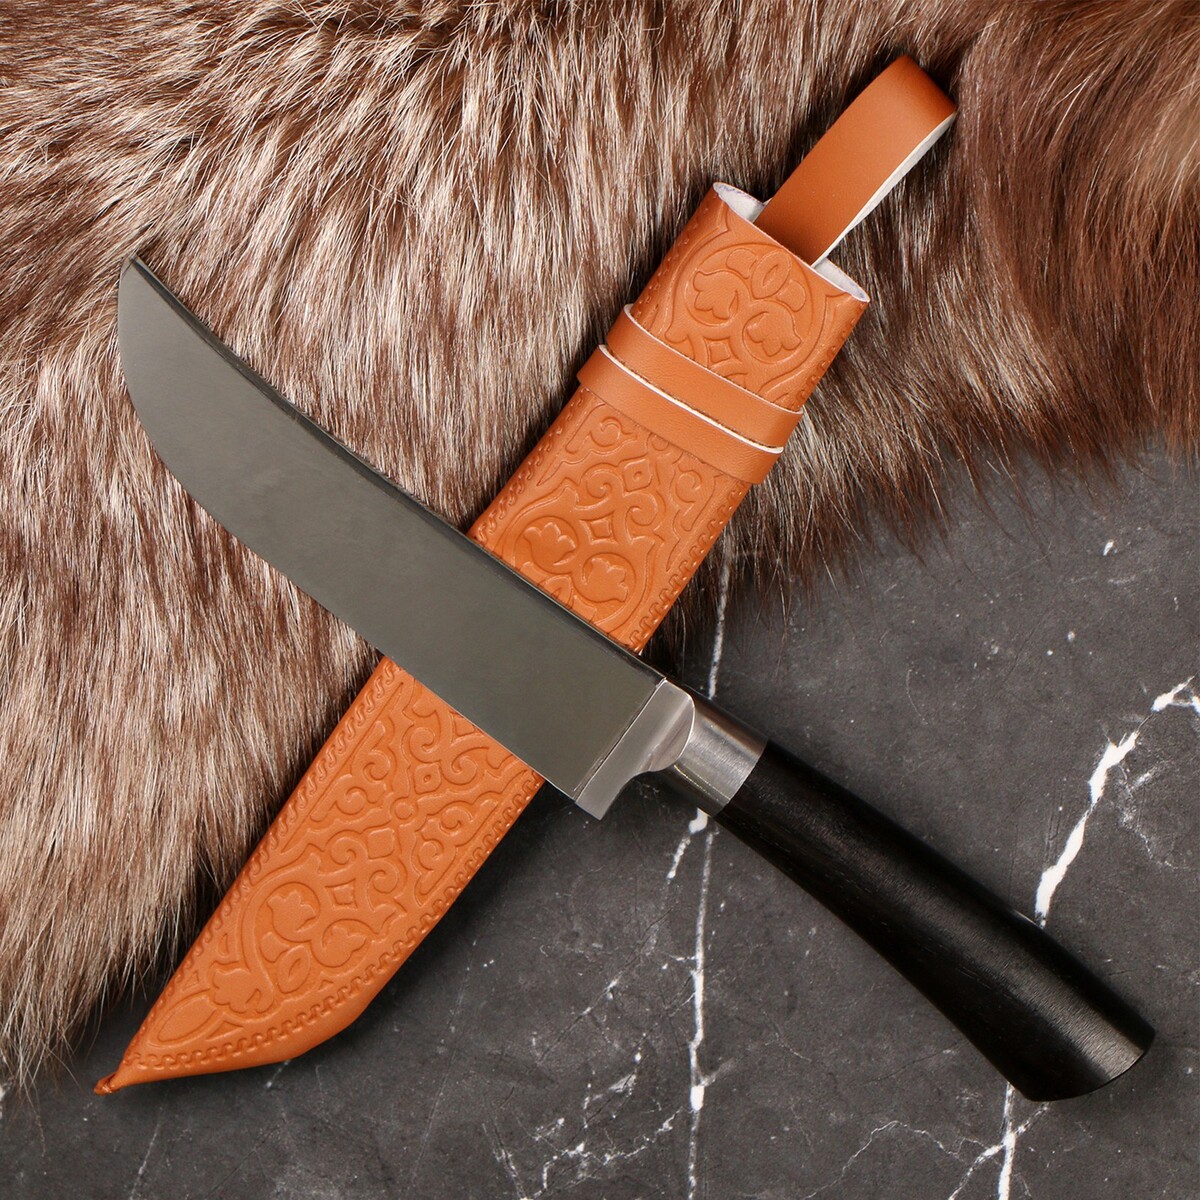 Нож корд куруш - малый, граб черный, сухма, пуговица, гарда олово. нс 420 (13-14 см) пуговица